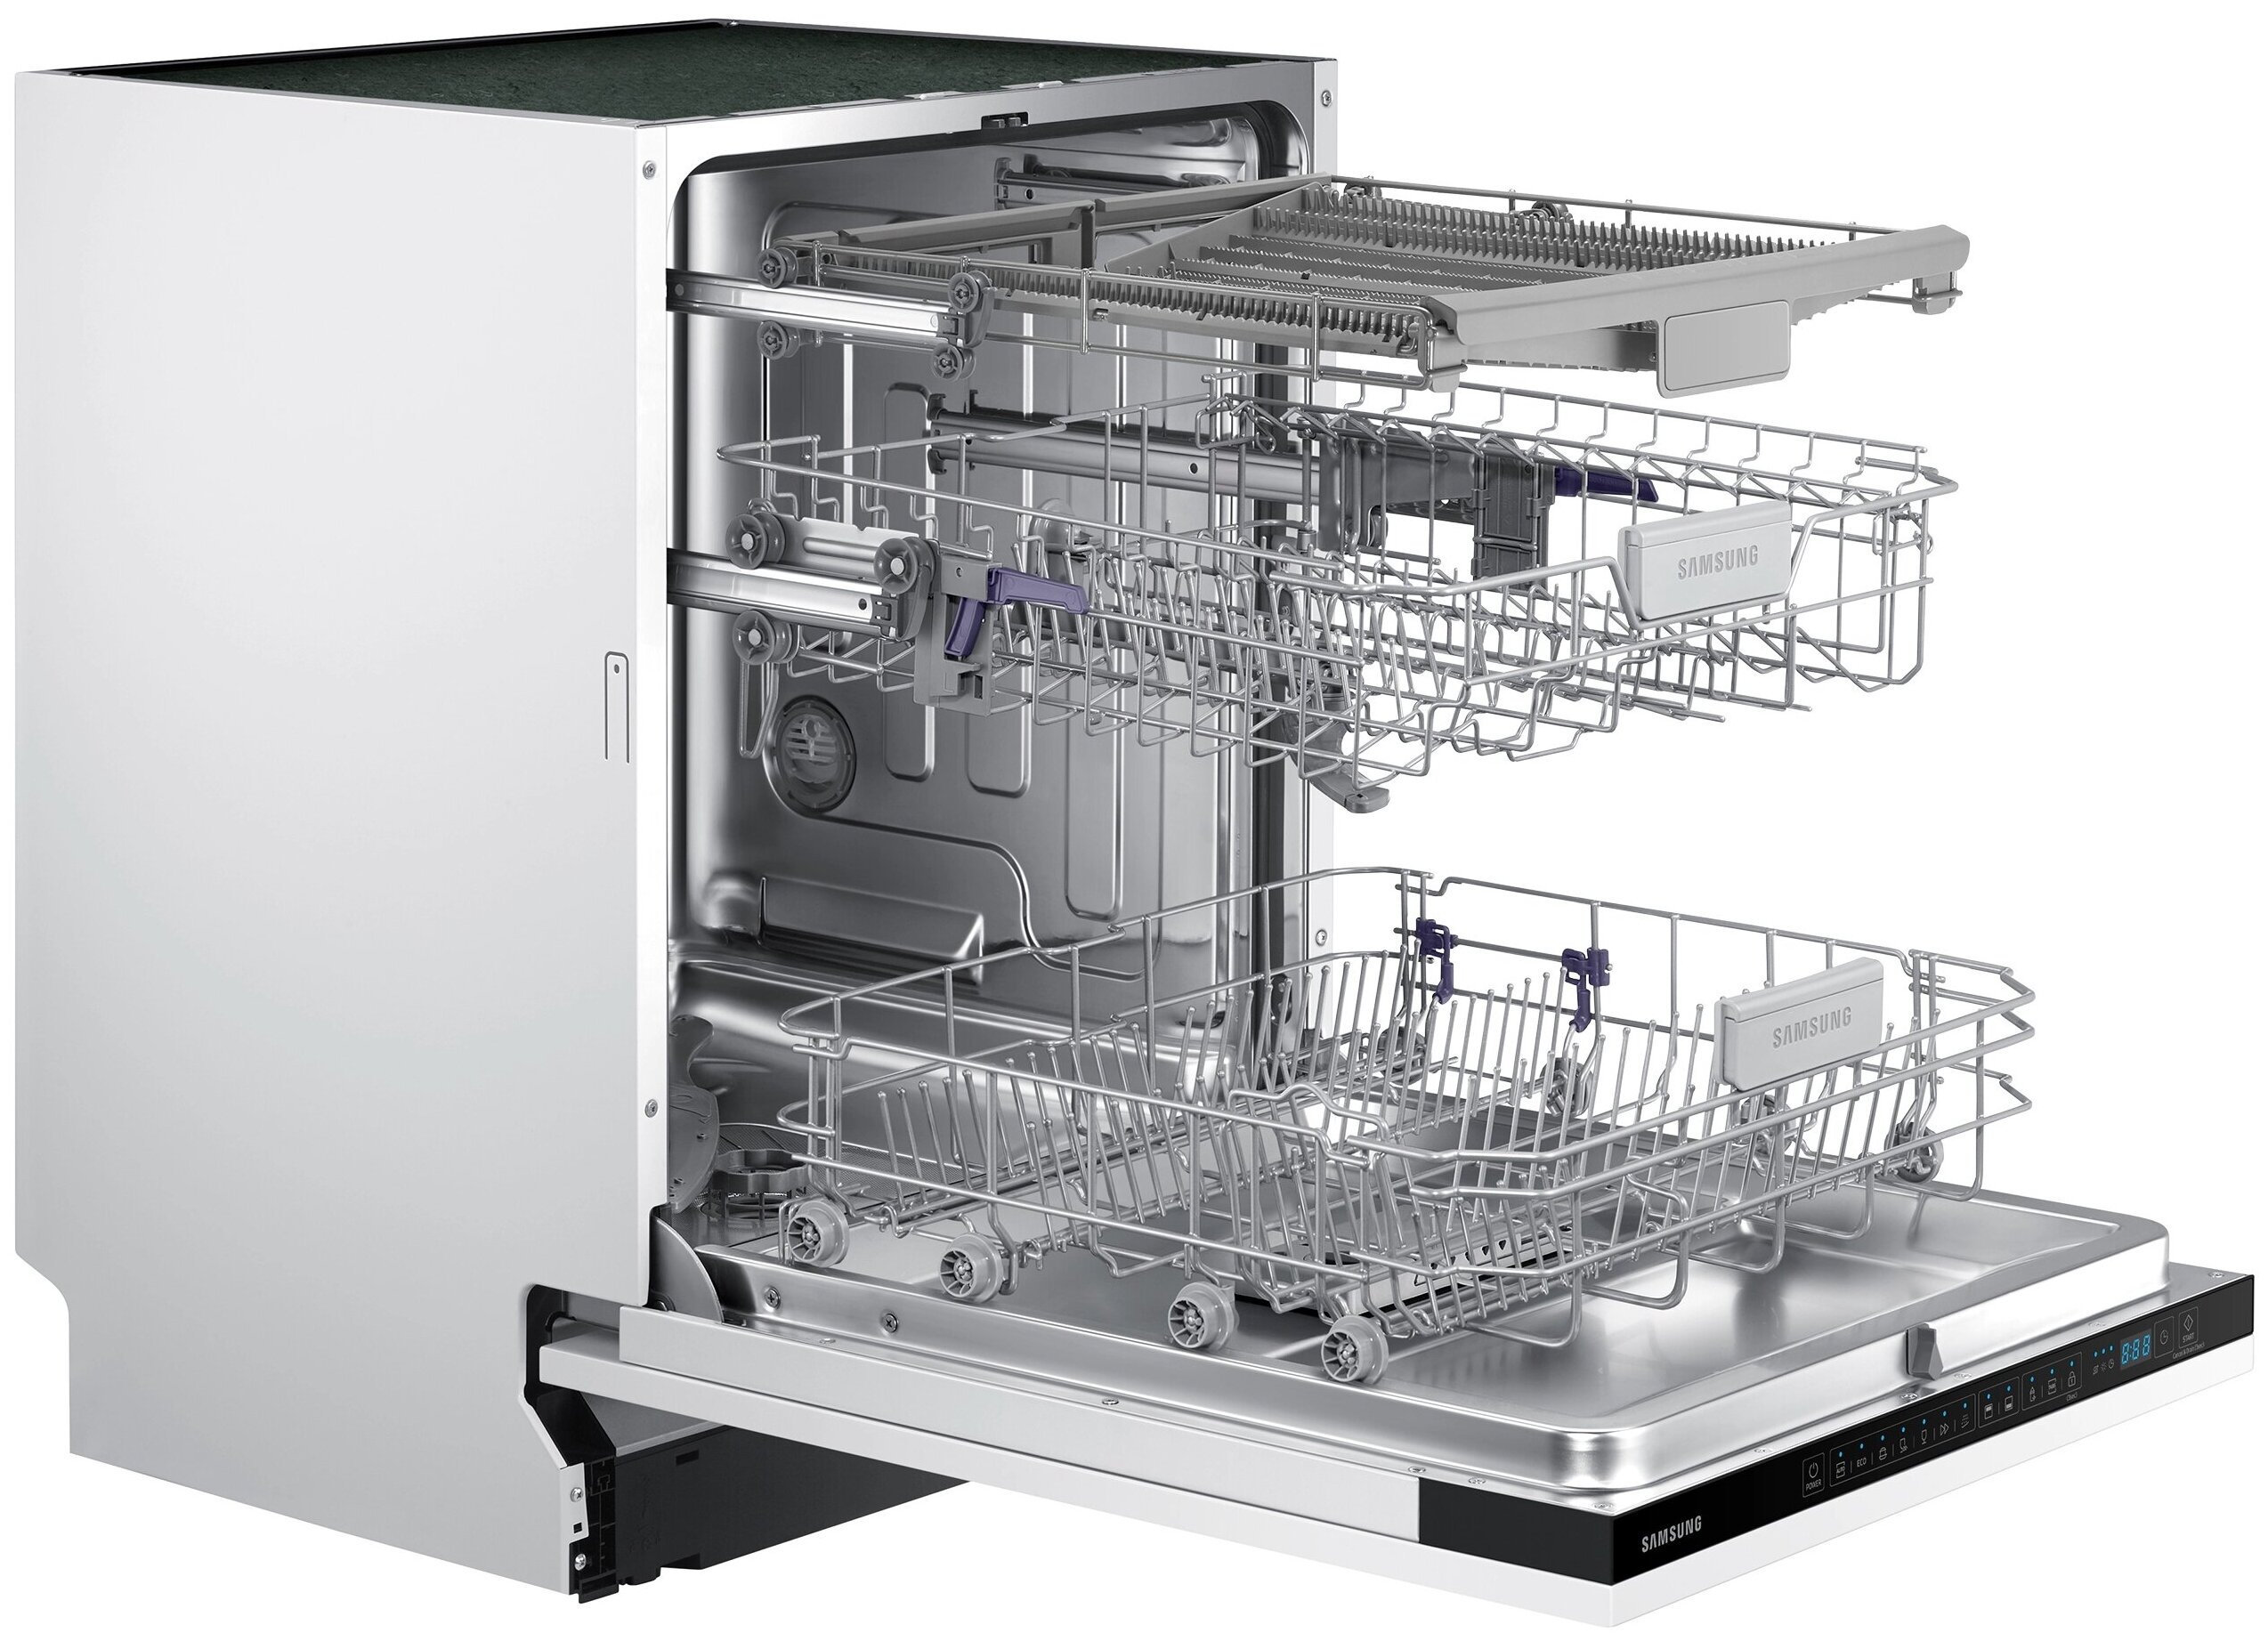 Посудомоечные машины встраиваемые фото. Посудомоечная машина Samsung dw60m6050bb/WT. Посудомоечная машина МПК-500ф. Посудомоечная машина Samsung dw60m5050bb WT. Посудомоечная машина dw60m5050bb/WT, 60см.